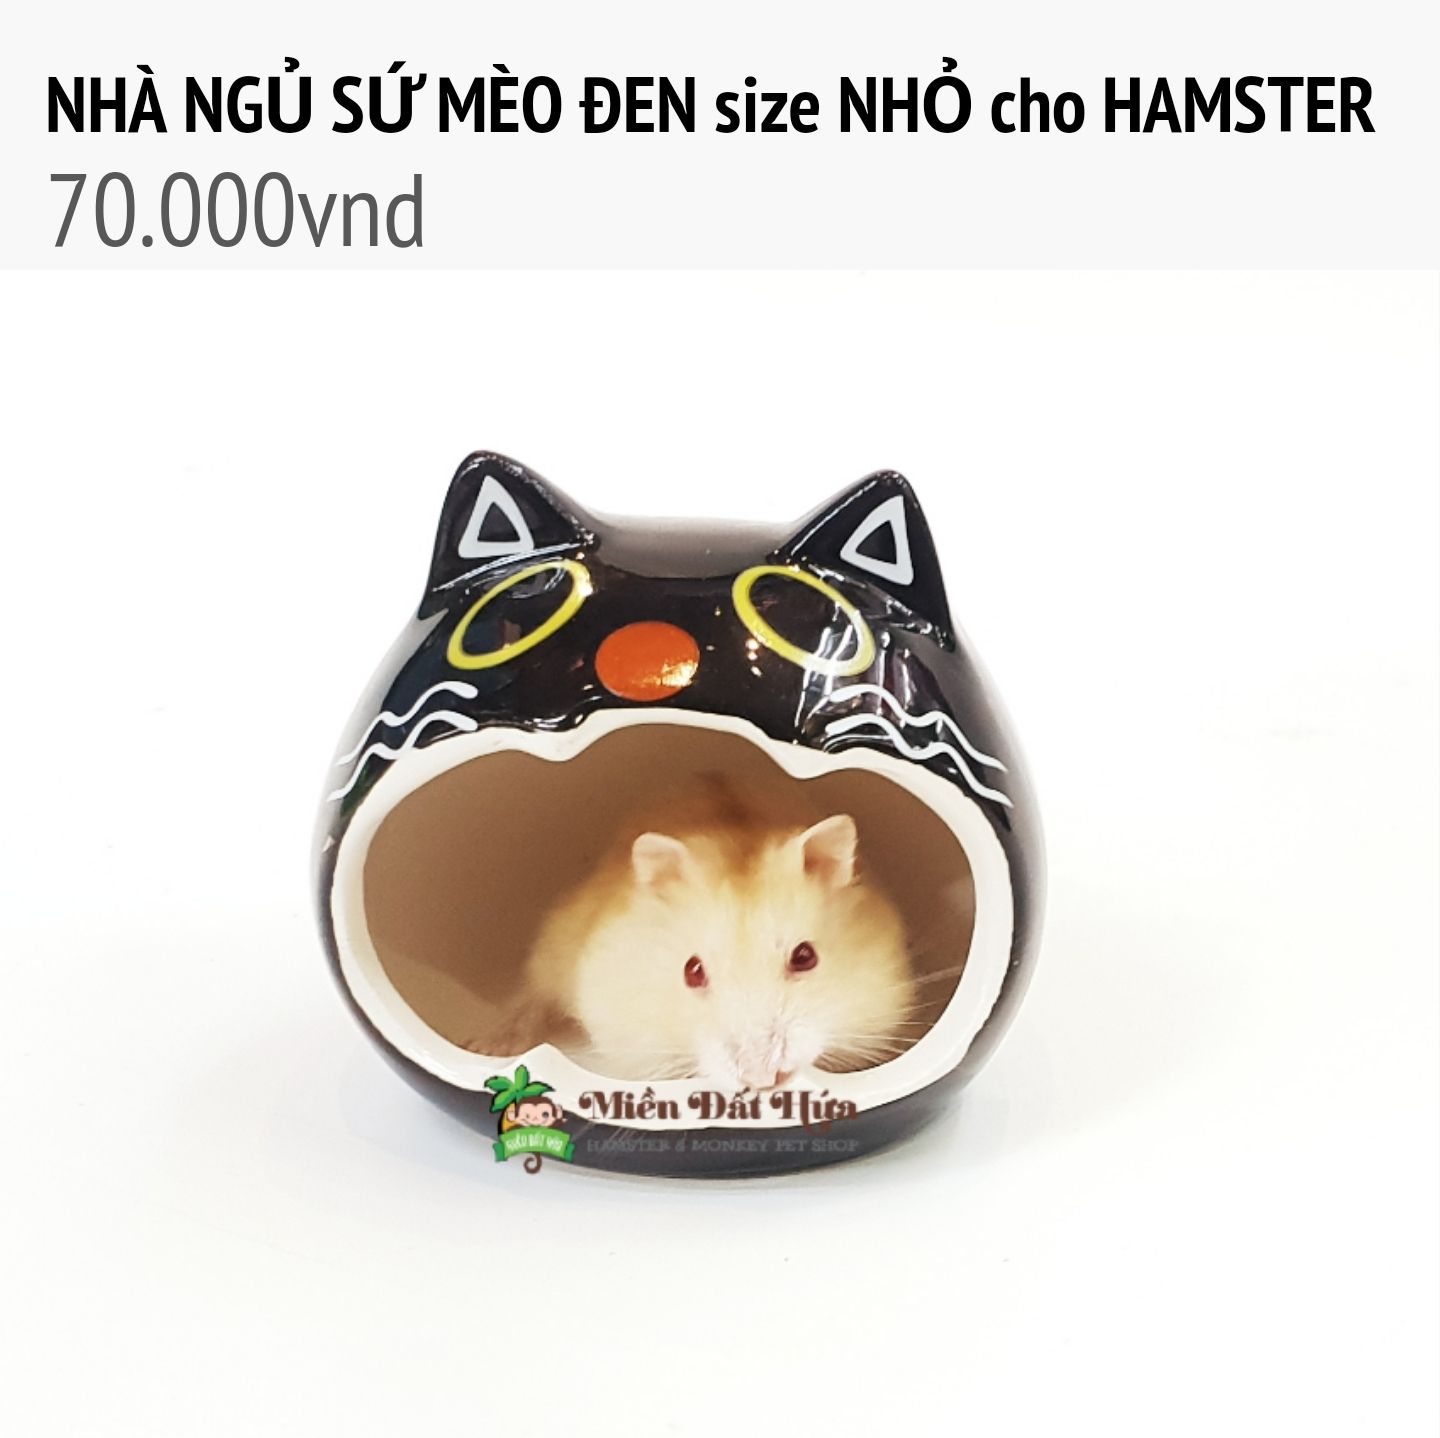 NHÀ NGỦ SỨ MÈO ĐEN cho hamster size nhỏ